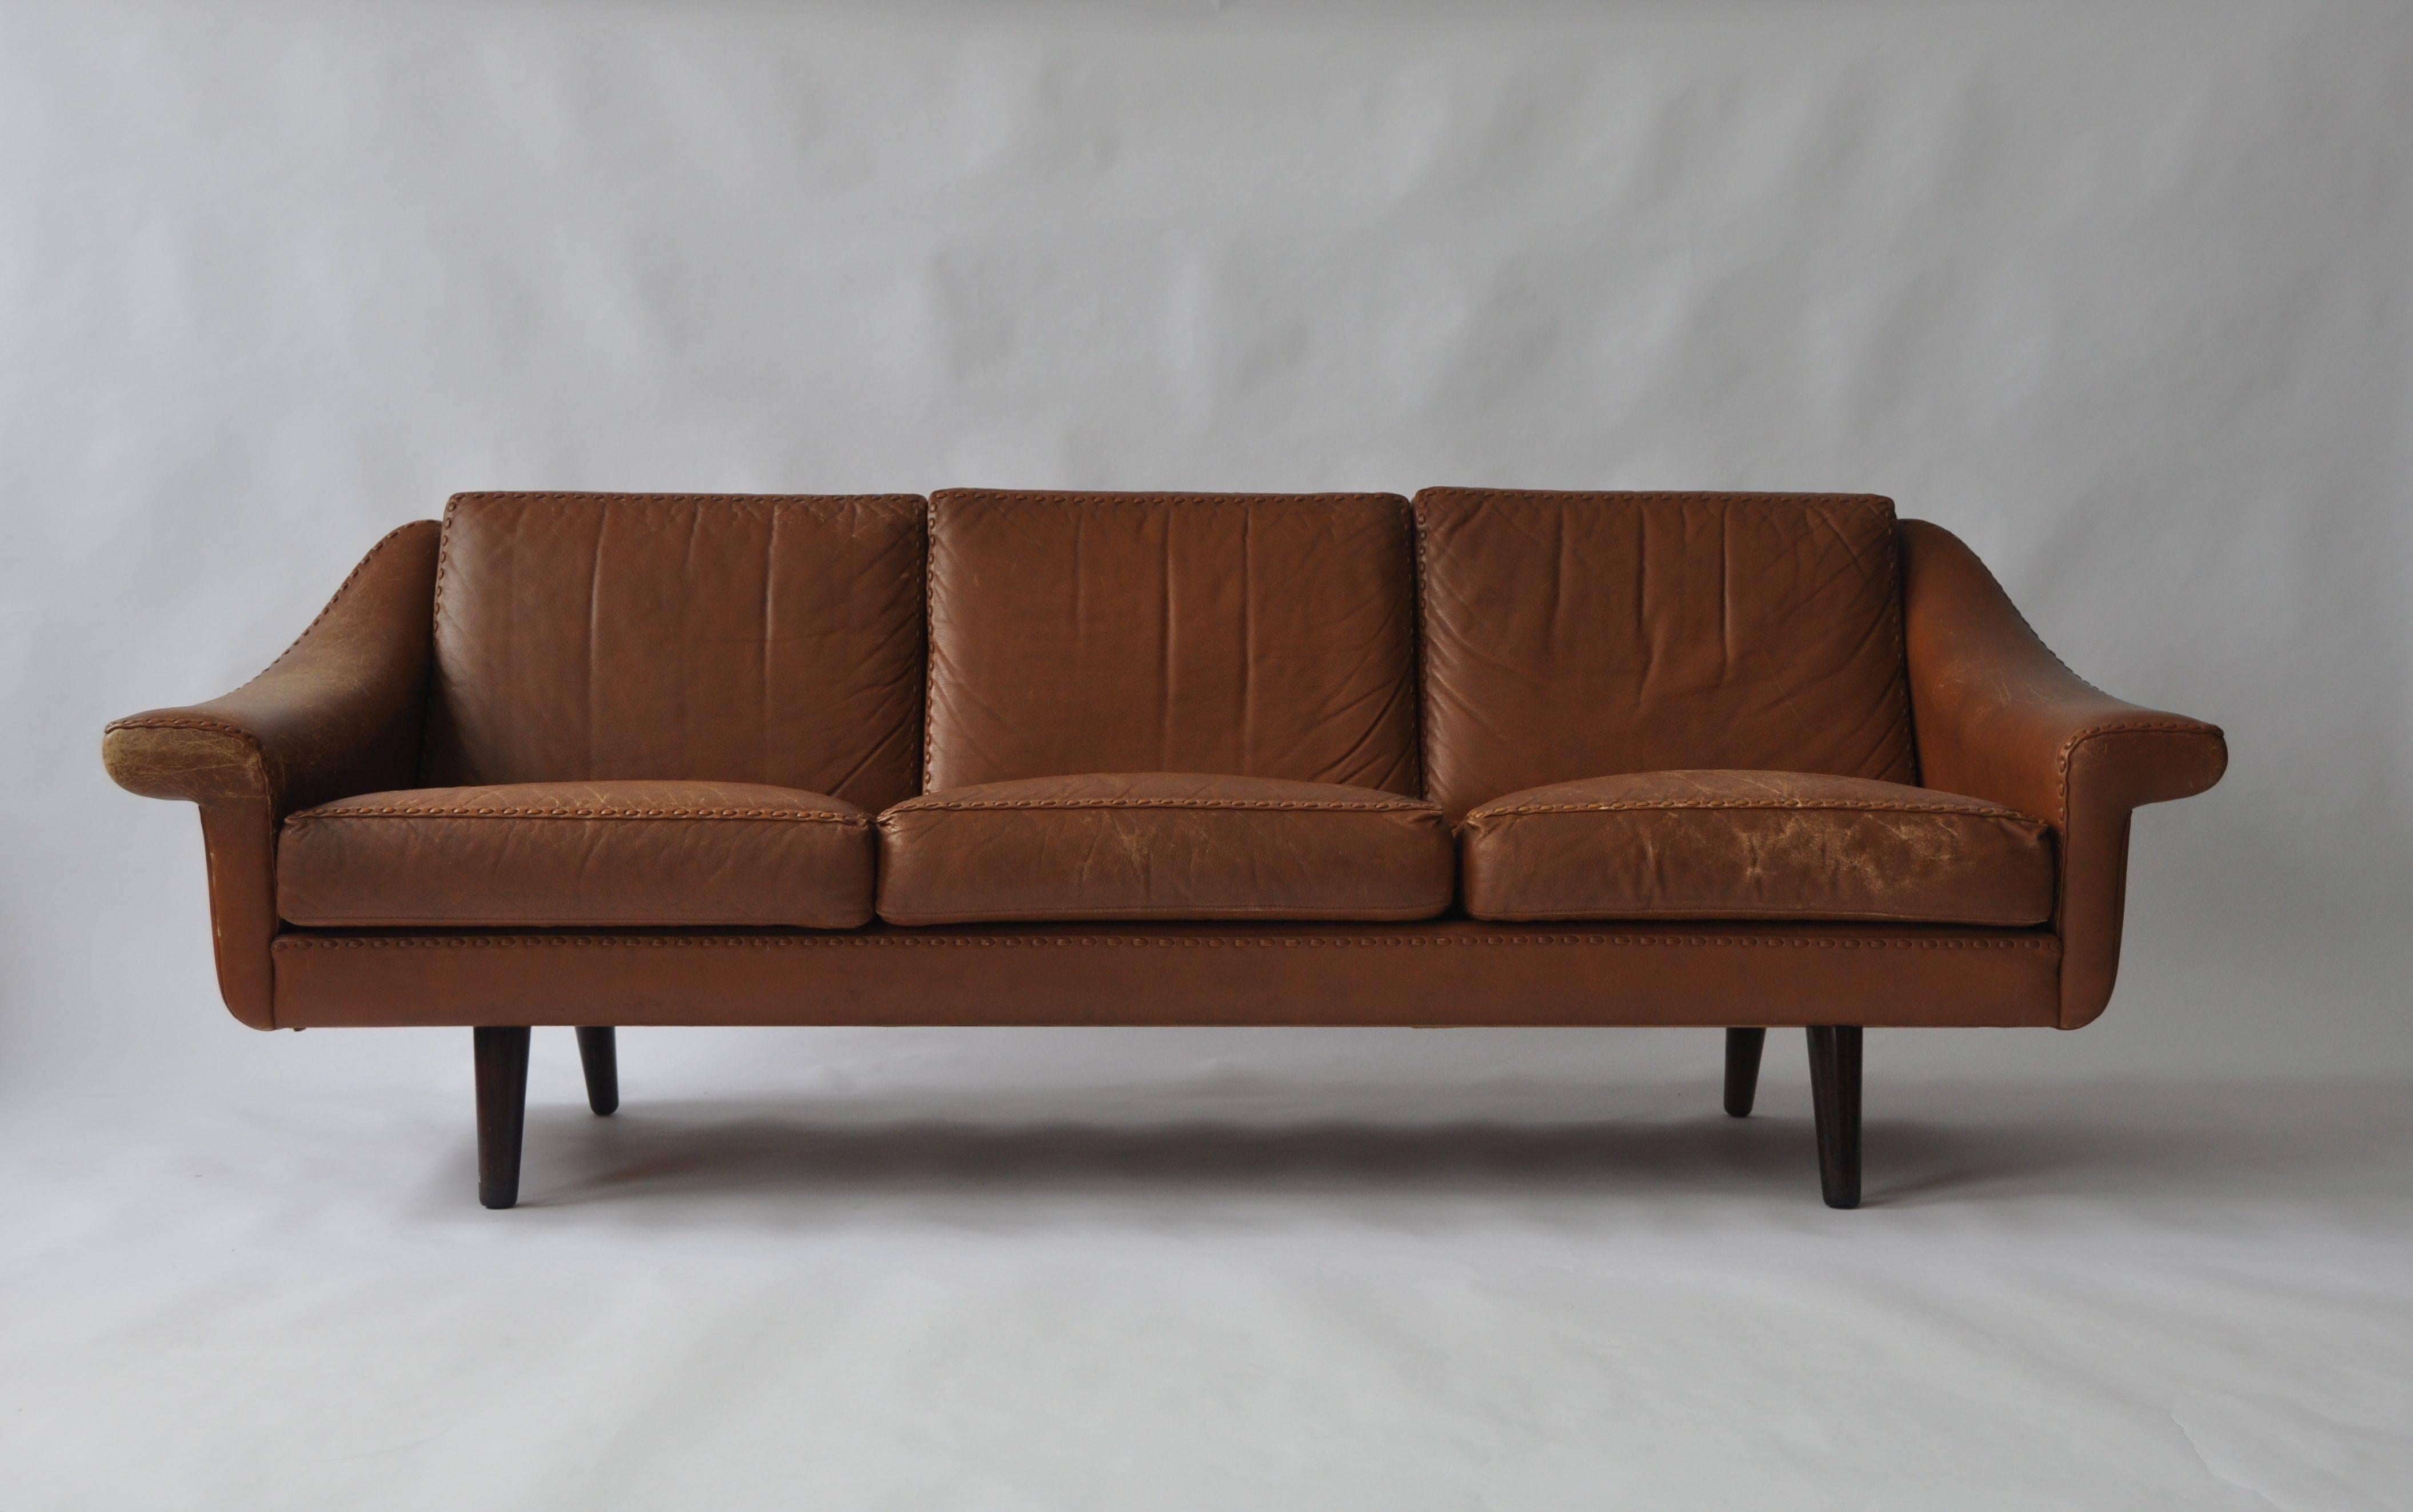 Aage Christiansen Danish leather sofa, 1960s. Teak legs.